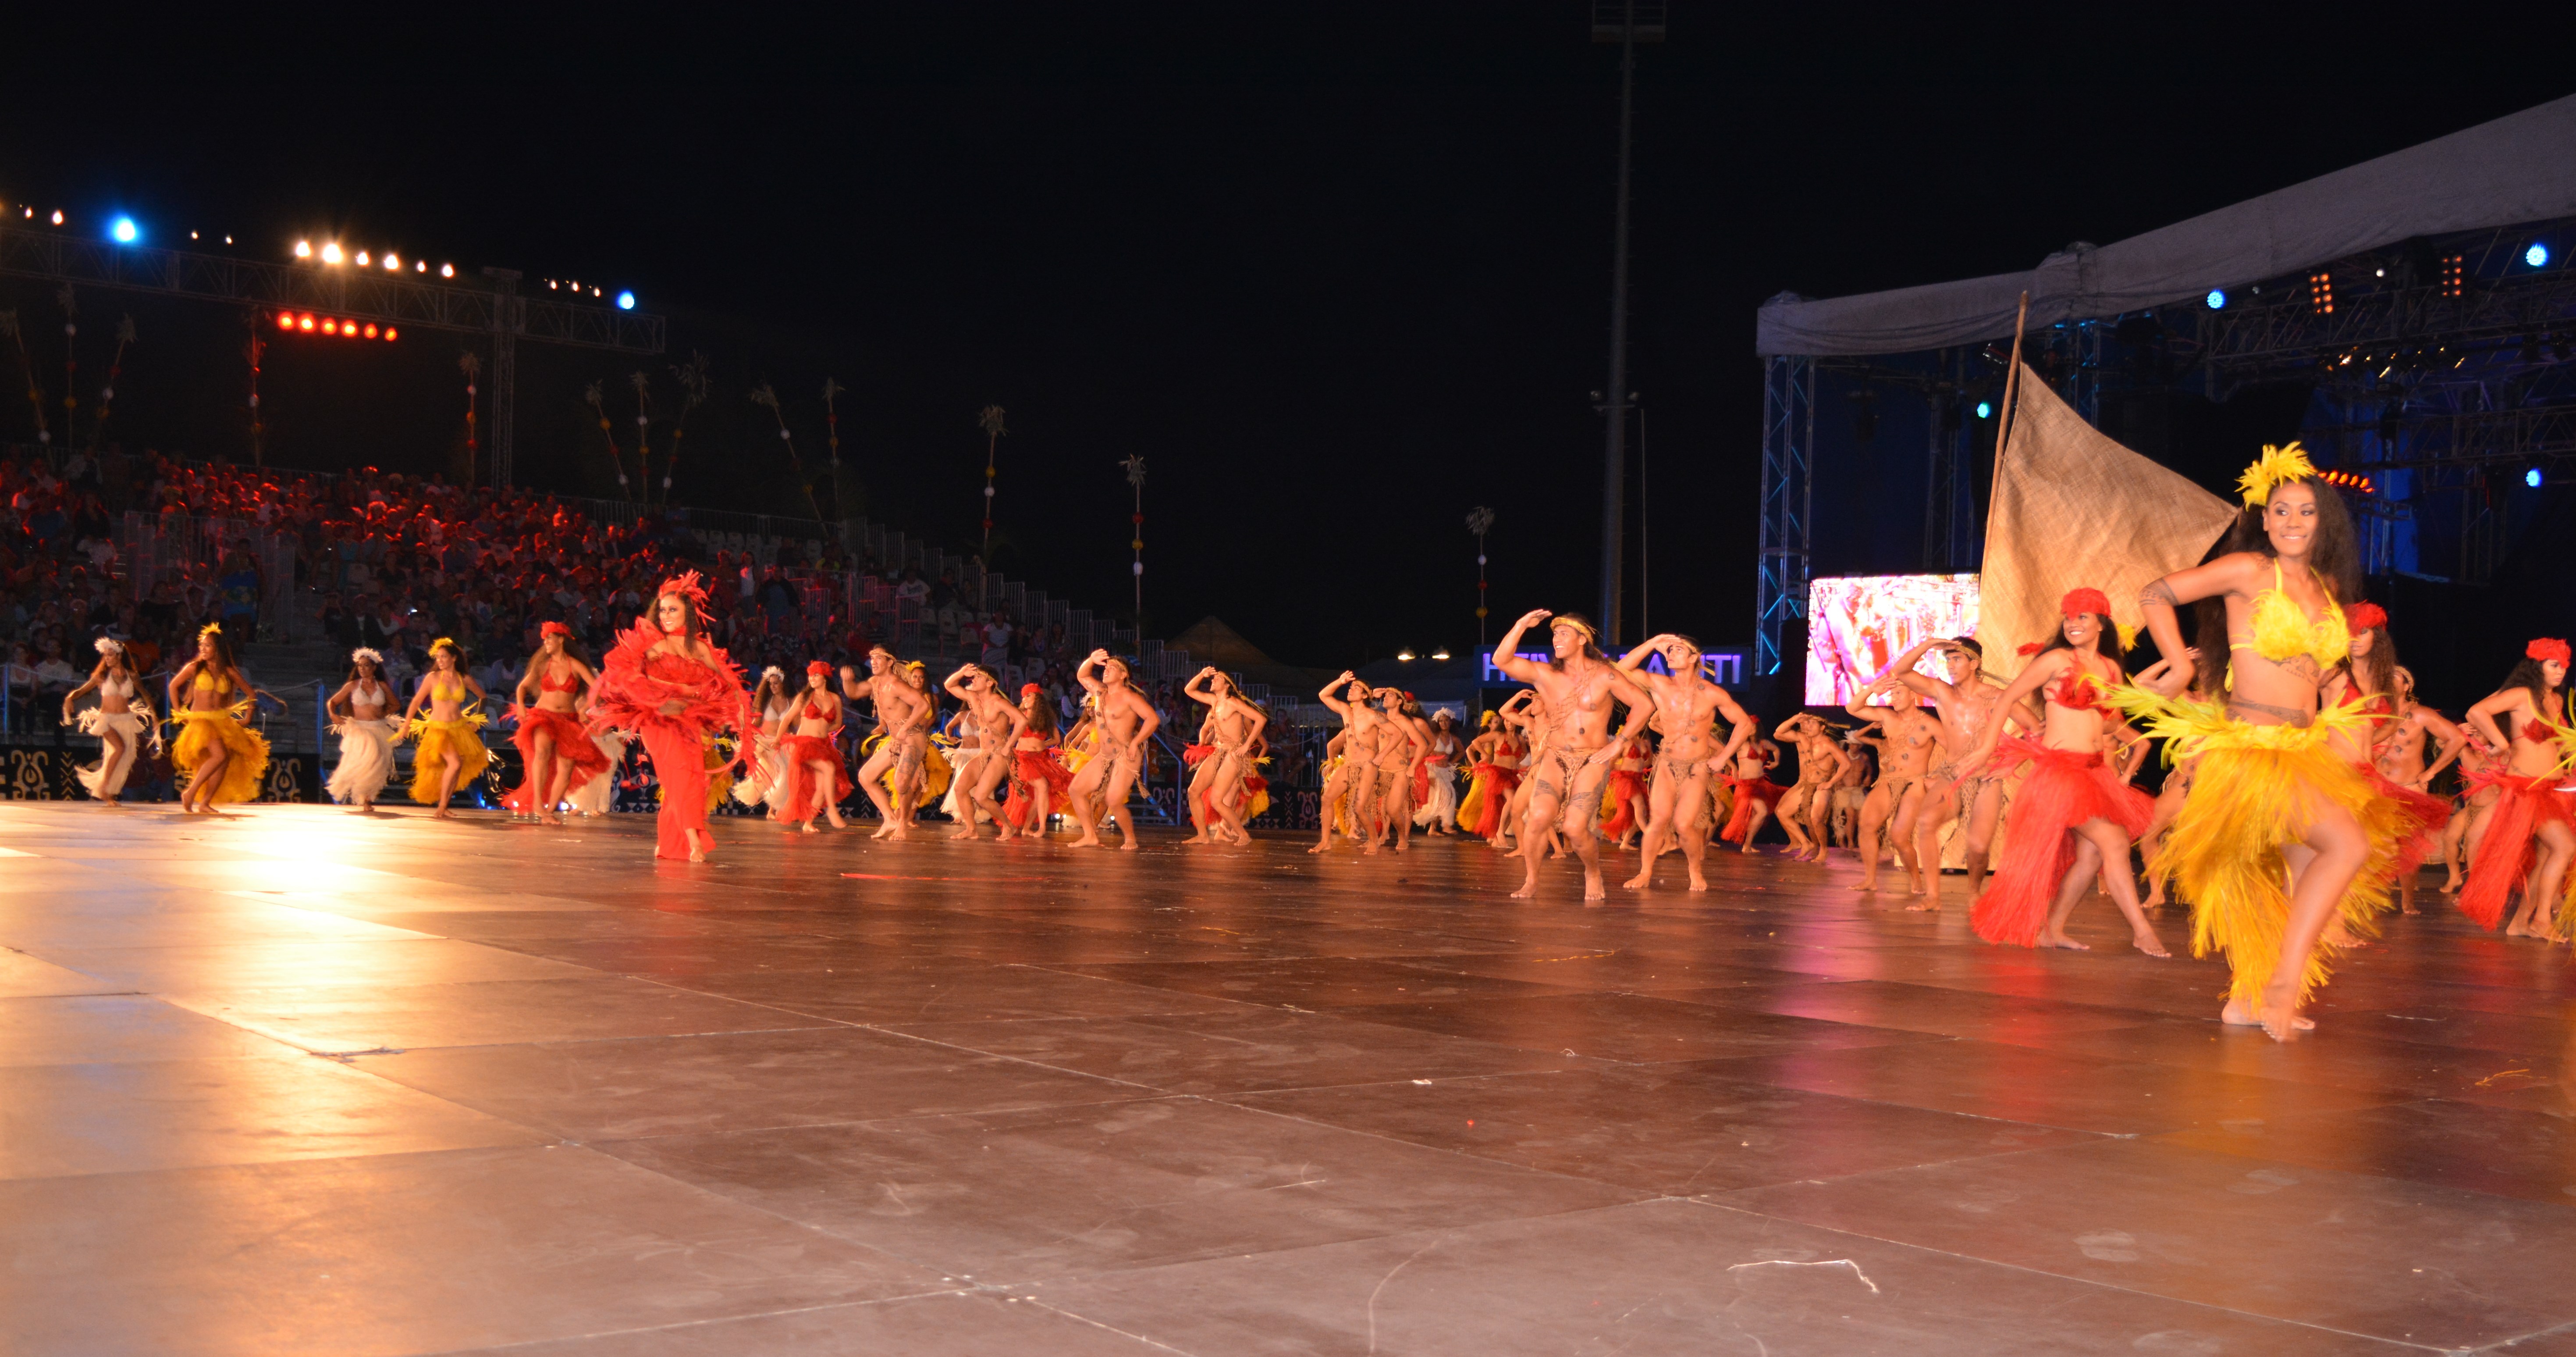 Pour sa première participation au Heiva, le groupe de danse Tahiti ia ruru-tu noa a choisi le thème de Hiro et Tanemanu